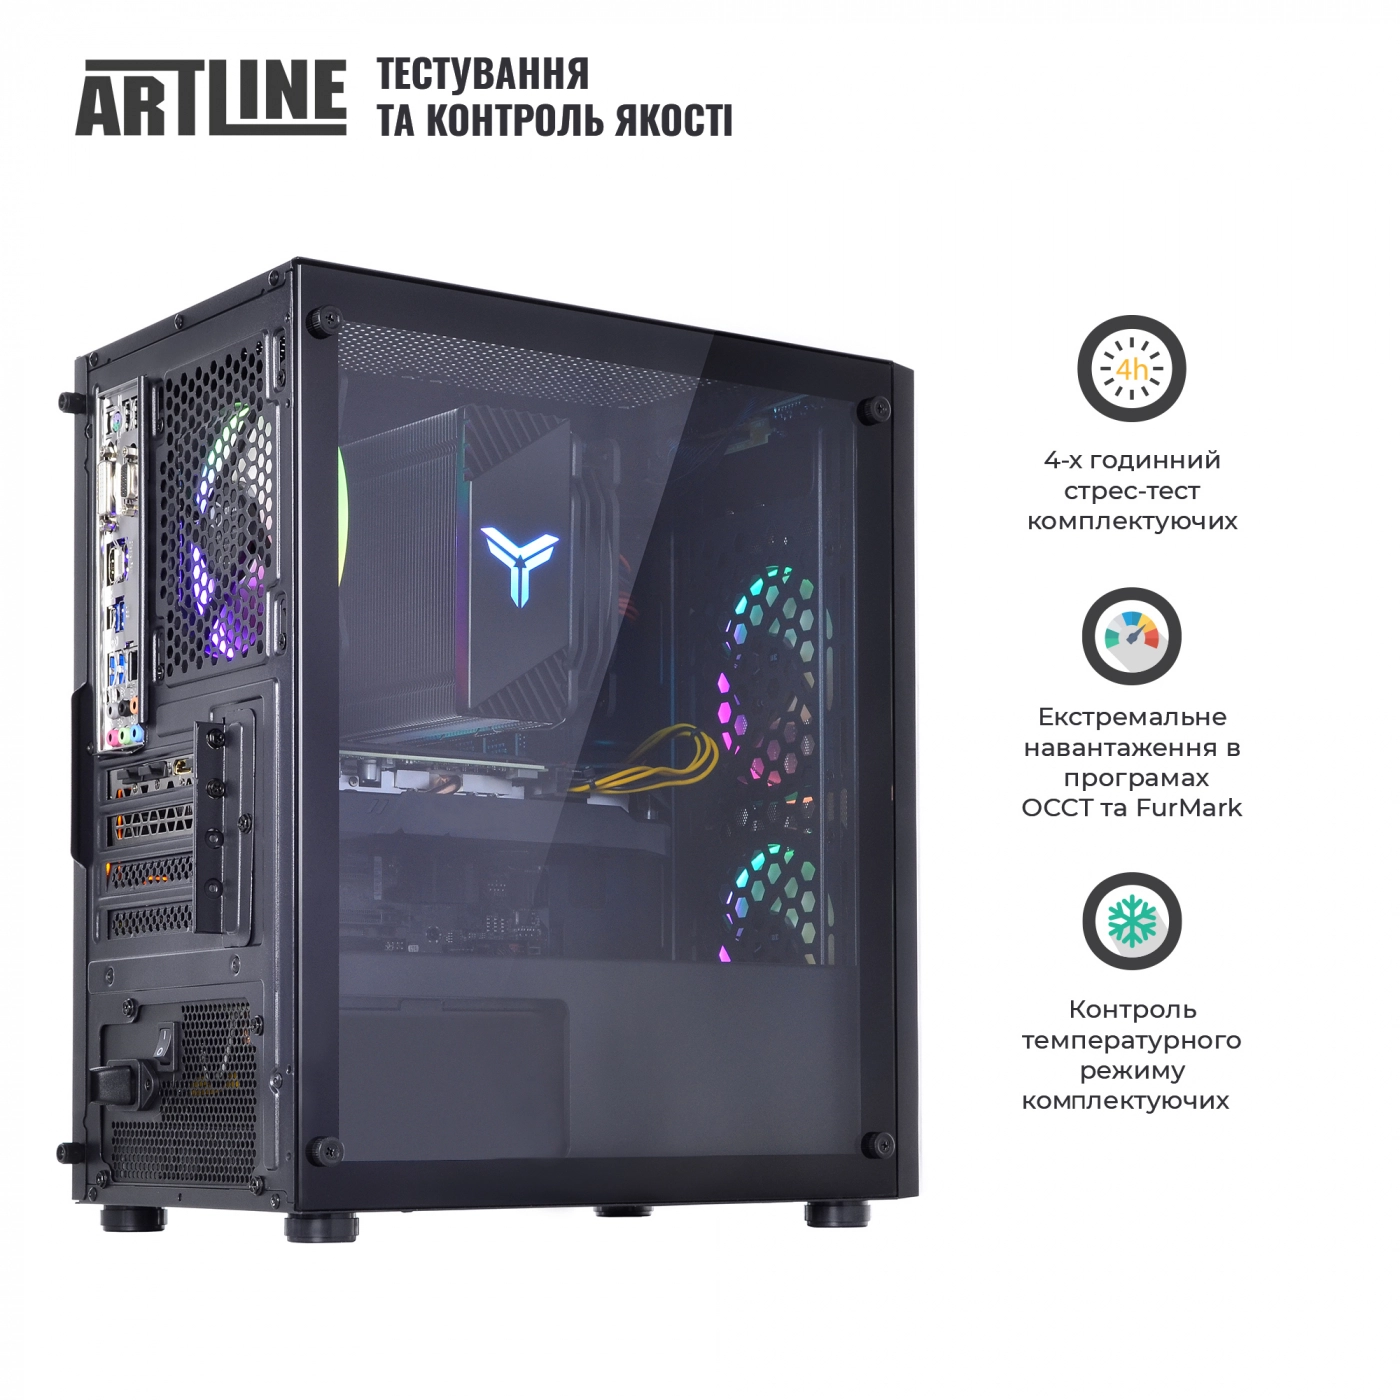 Купить Компьютер ARTLINE Gaming X71v36 - фото 9